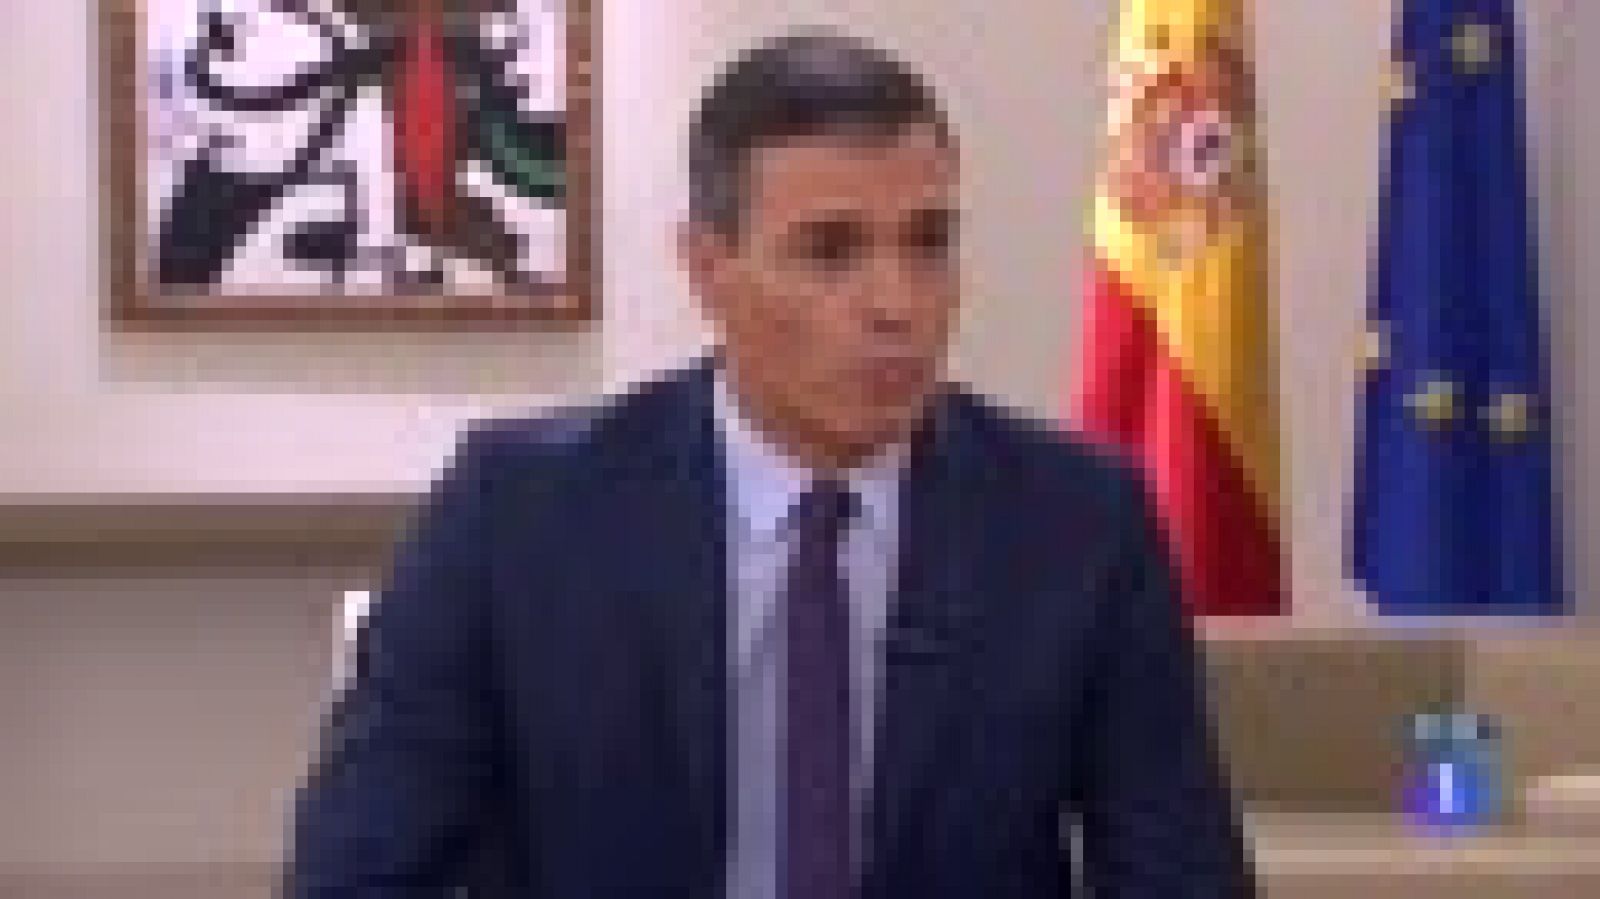 Sánchez asegura que "no dormiría tranquilo" si incorporase a ministros de Podemos en su gobierno - RTVE.es